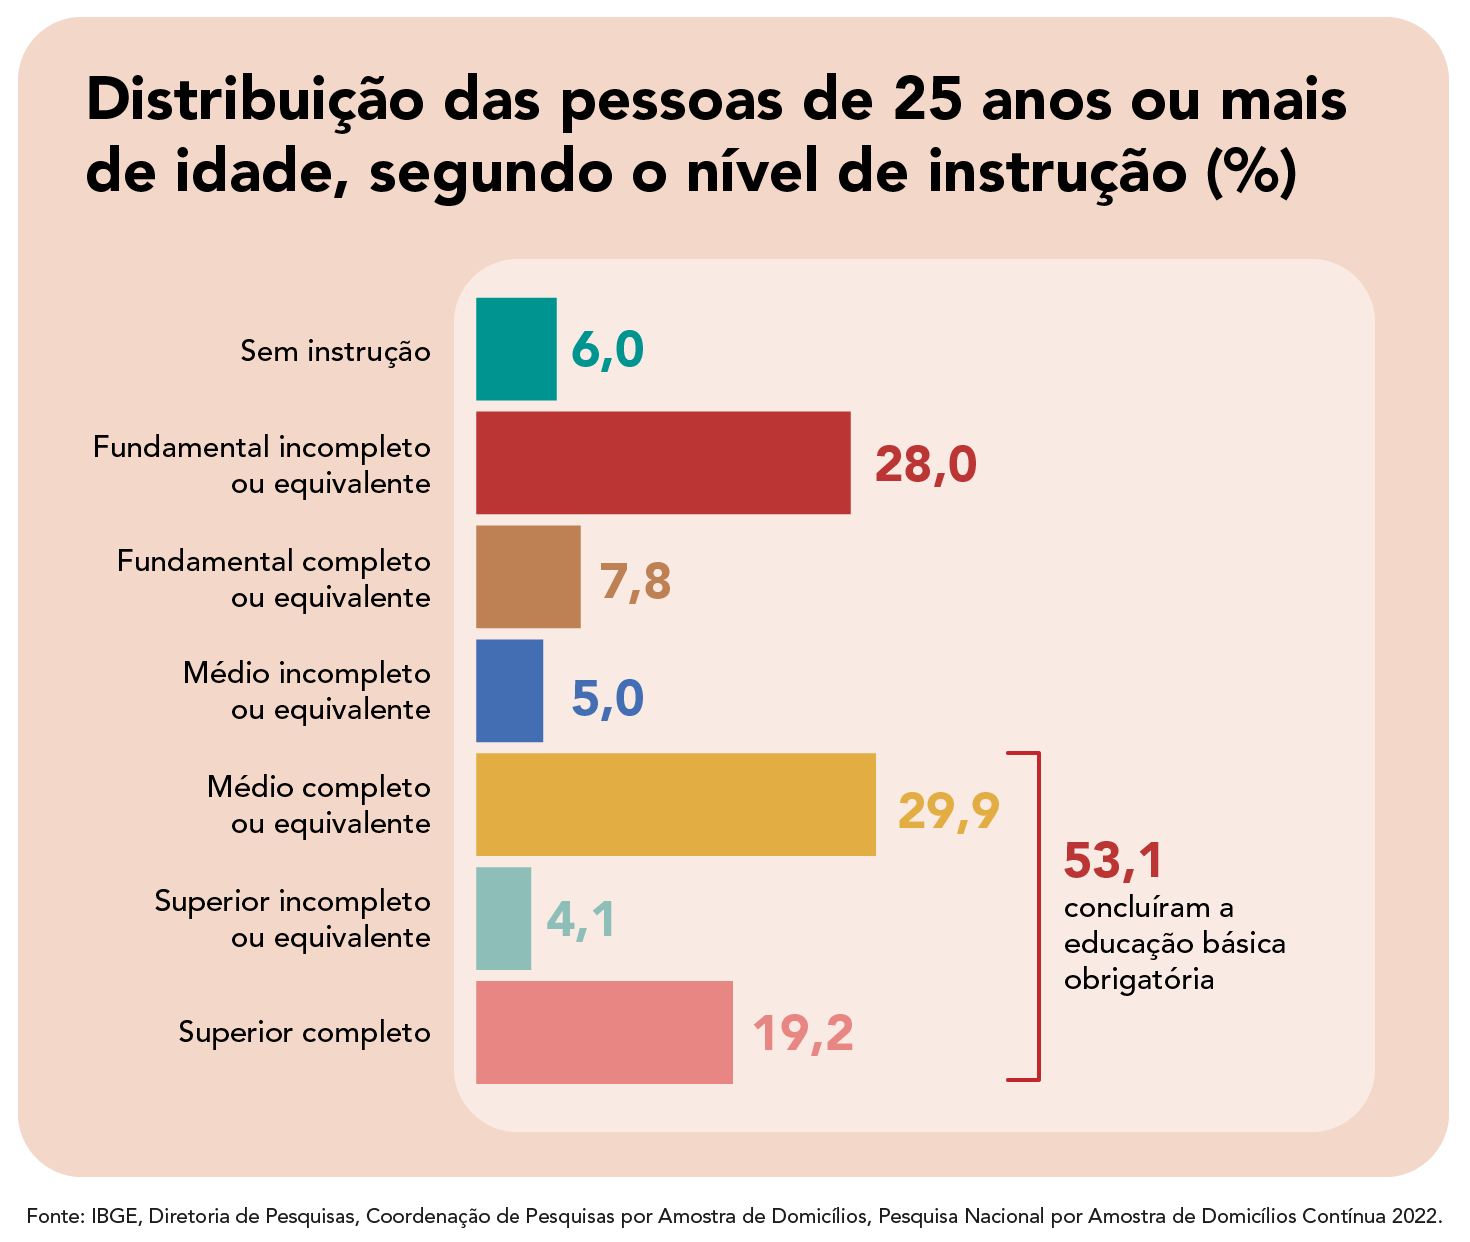 Saiba como é a divisão do sistema de educação brasileiro